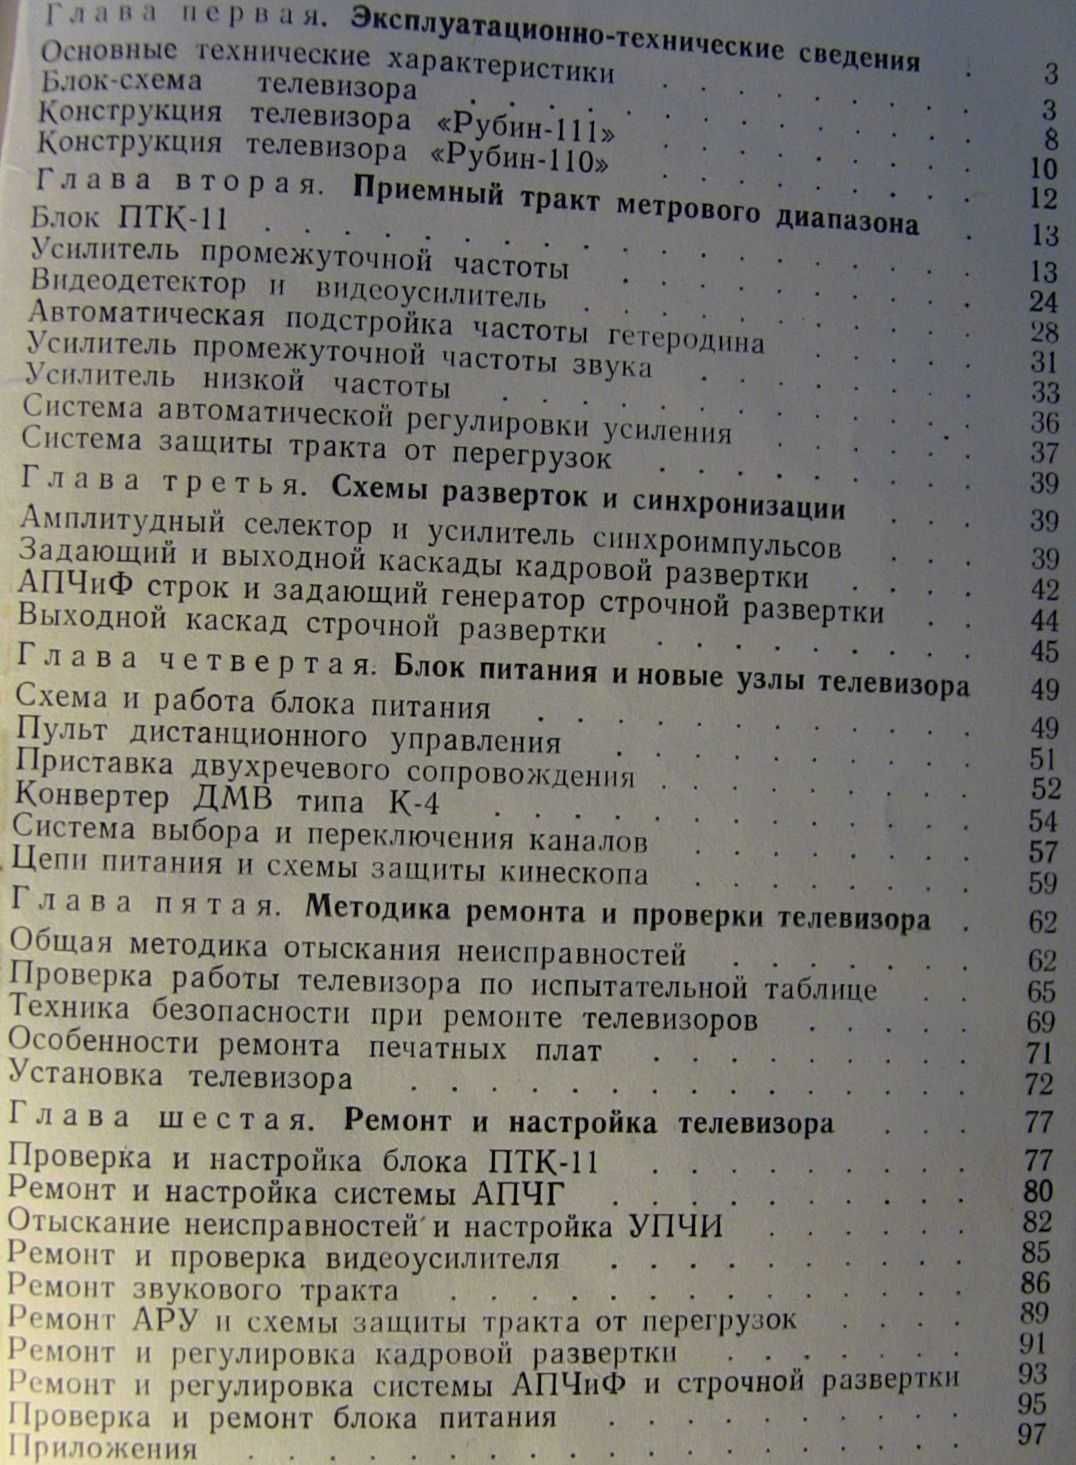 Телевизоры Рубин-110, Рубин-111. Схемы описание работы. 1971 год